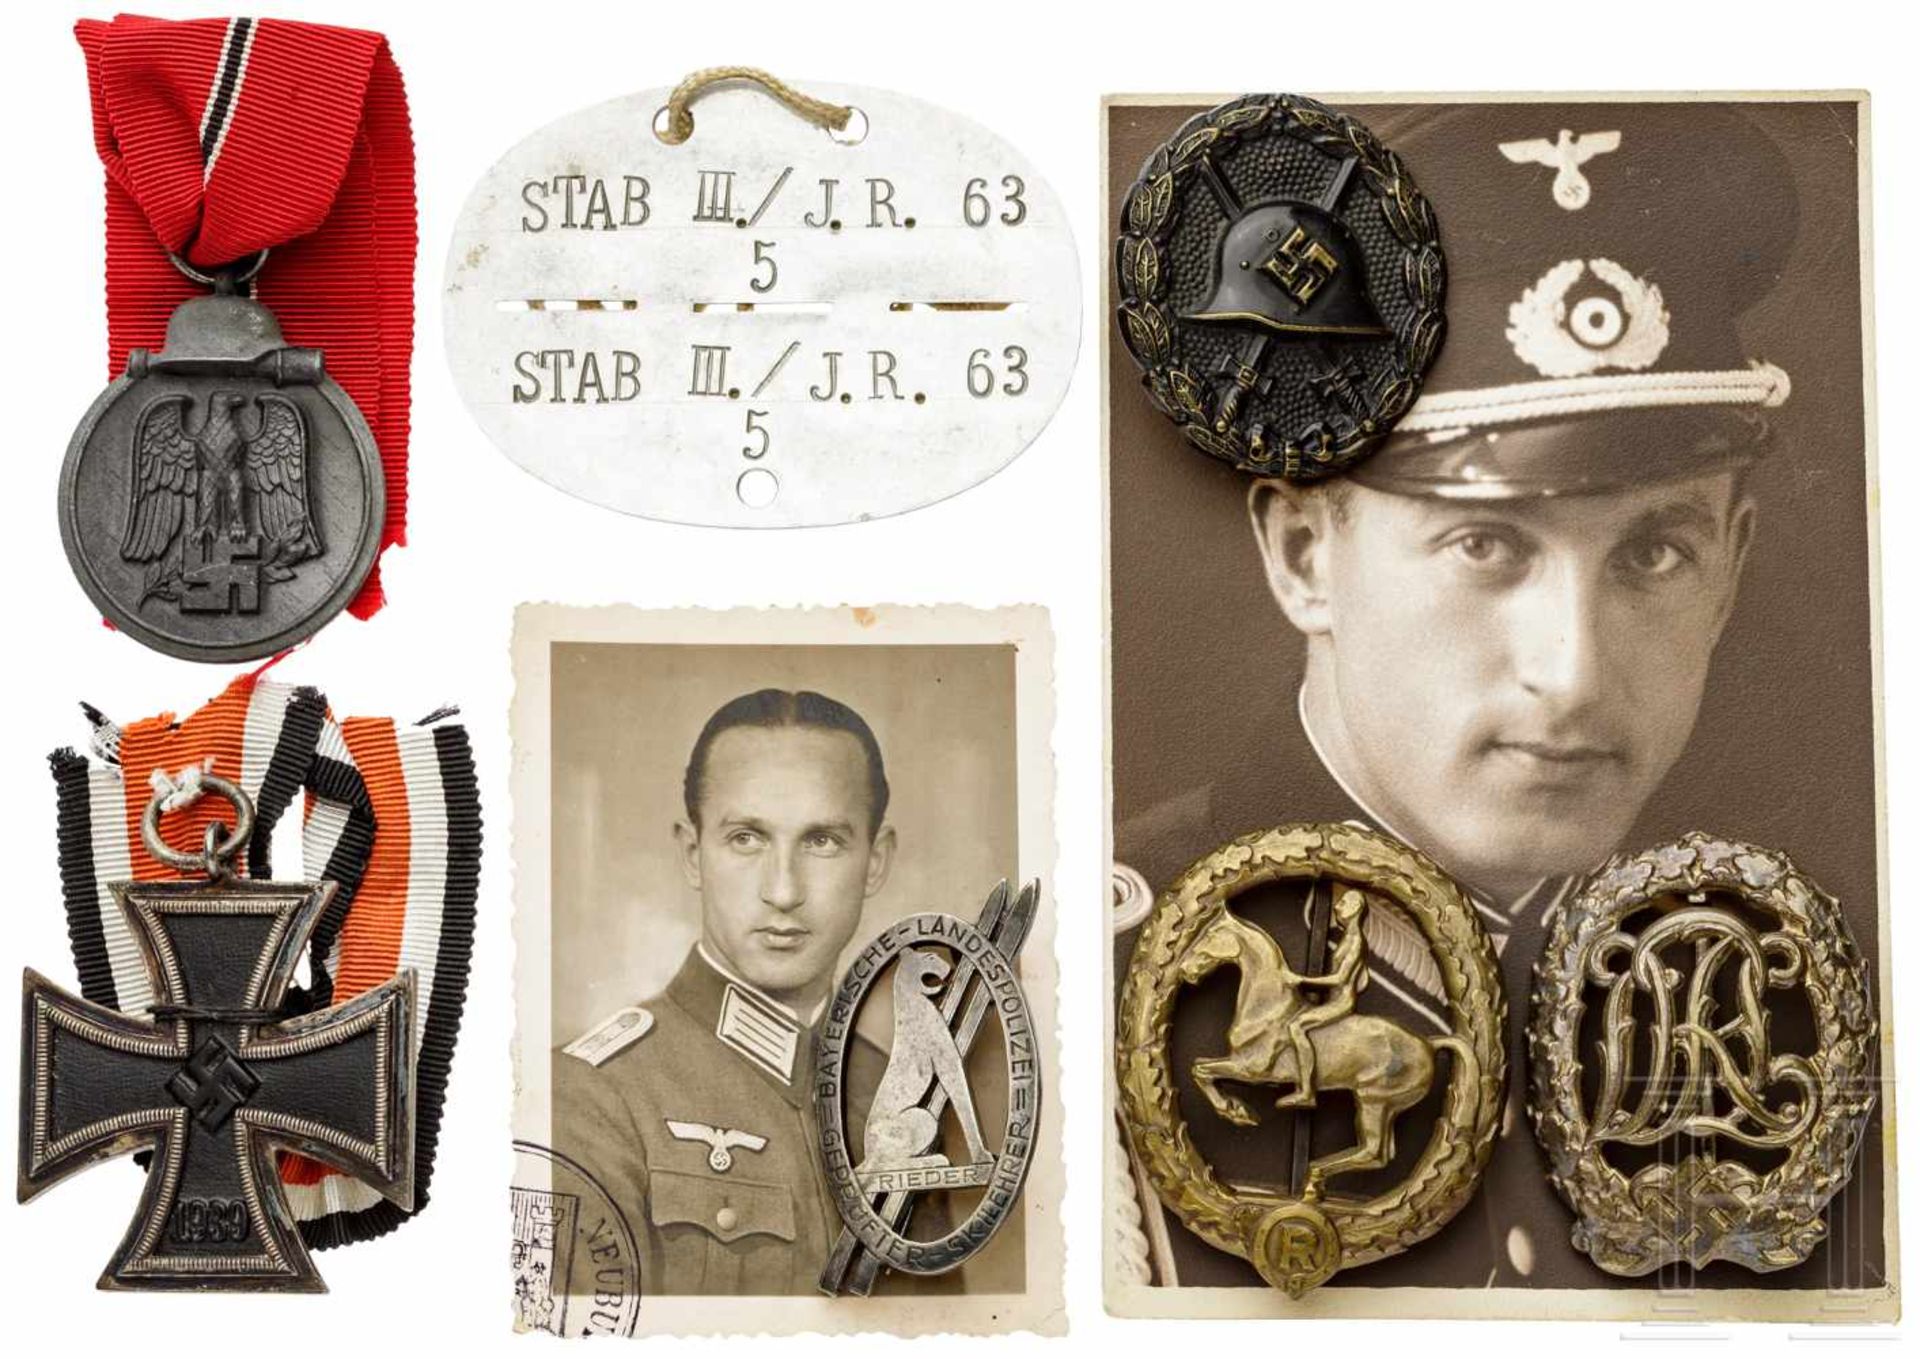 Nachlass Oberstleutnant Ludwig Rieder (Auszeichnungen, Fotos, Dokumente, Bücher)Abzeichen "Geprüfter